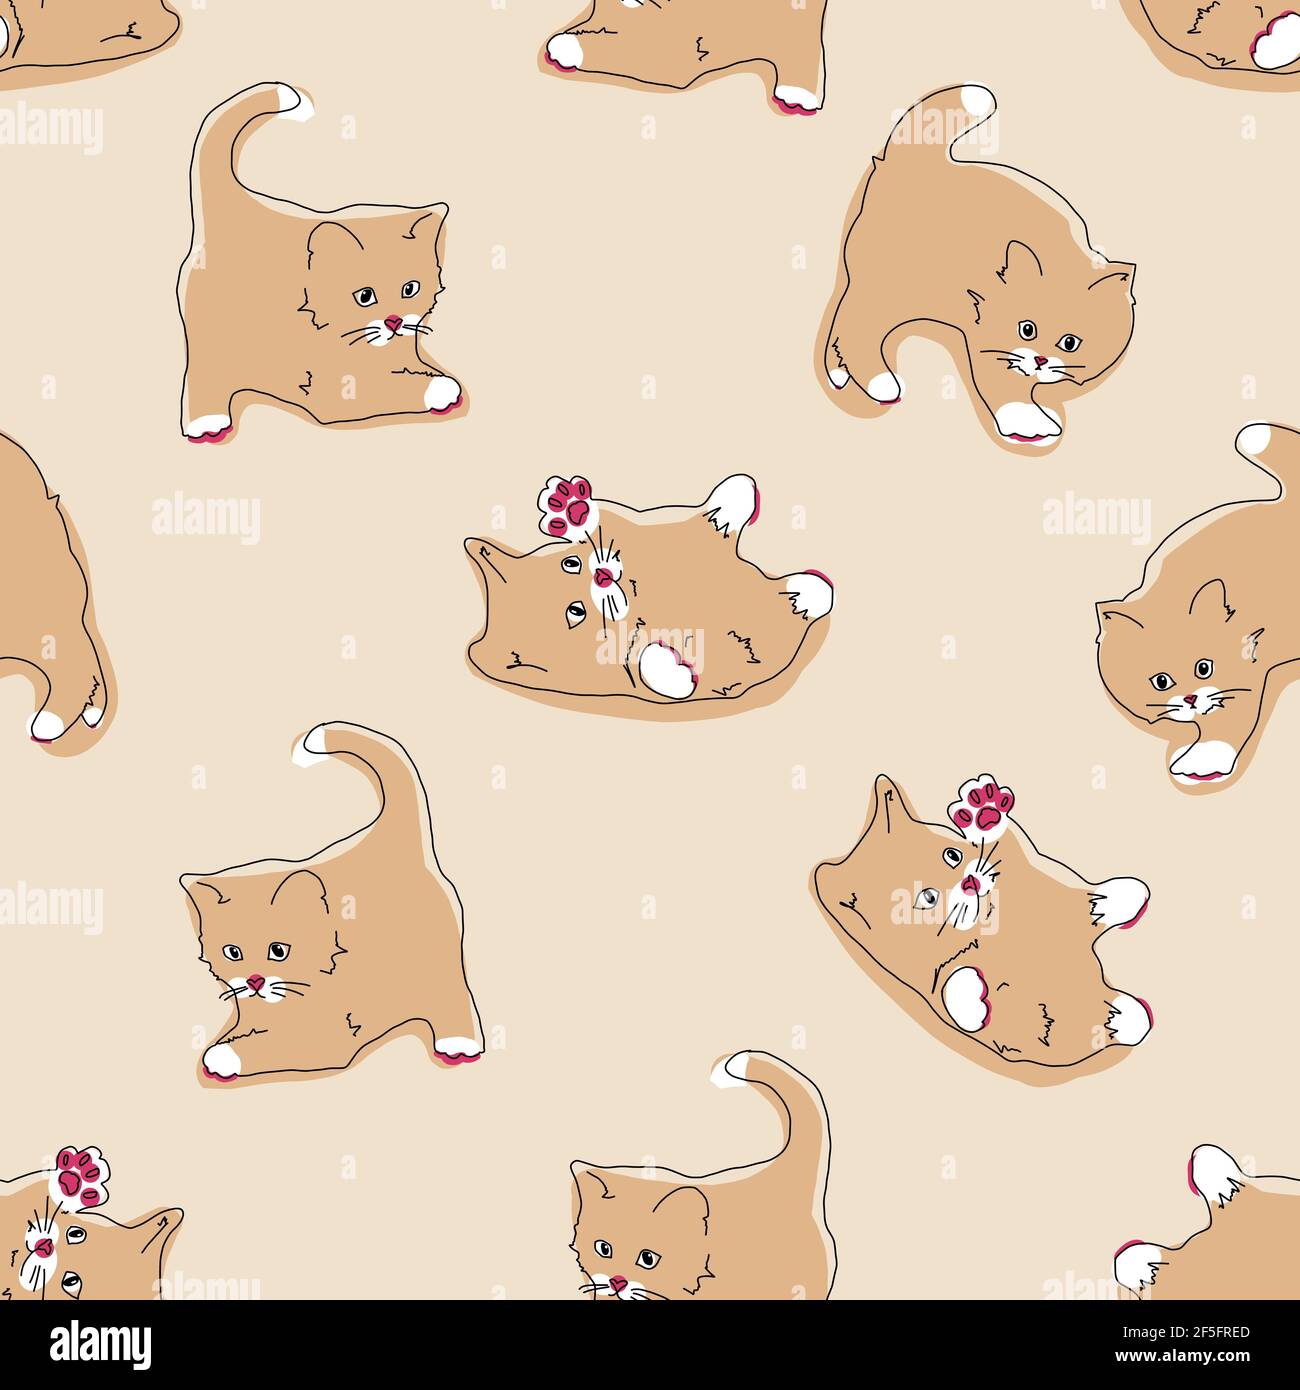 Katzen Nahtloses Muster. Lustige Cartoon Kätzchen in verschiedenen Posen auf beige Farbe Hintergrund. Vektor handgezeichnete Illustration in flachem Stil, pastellfarben Stock Vektor